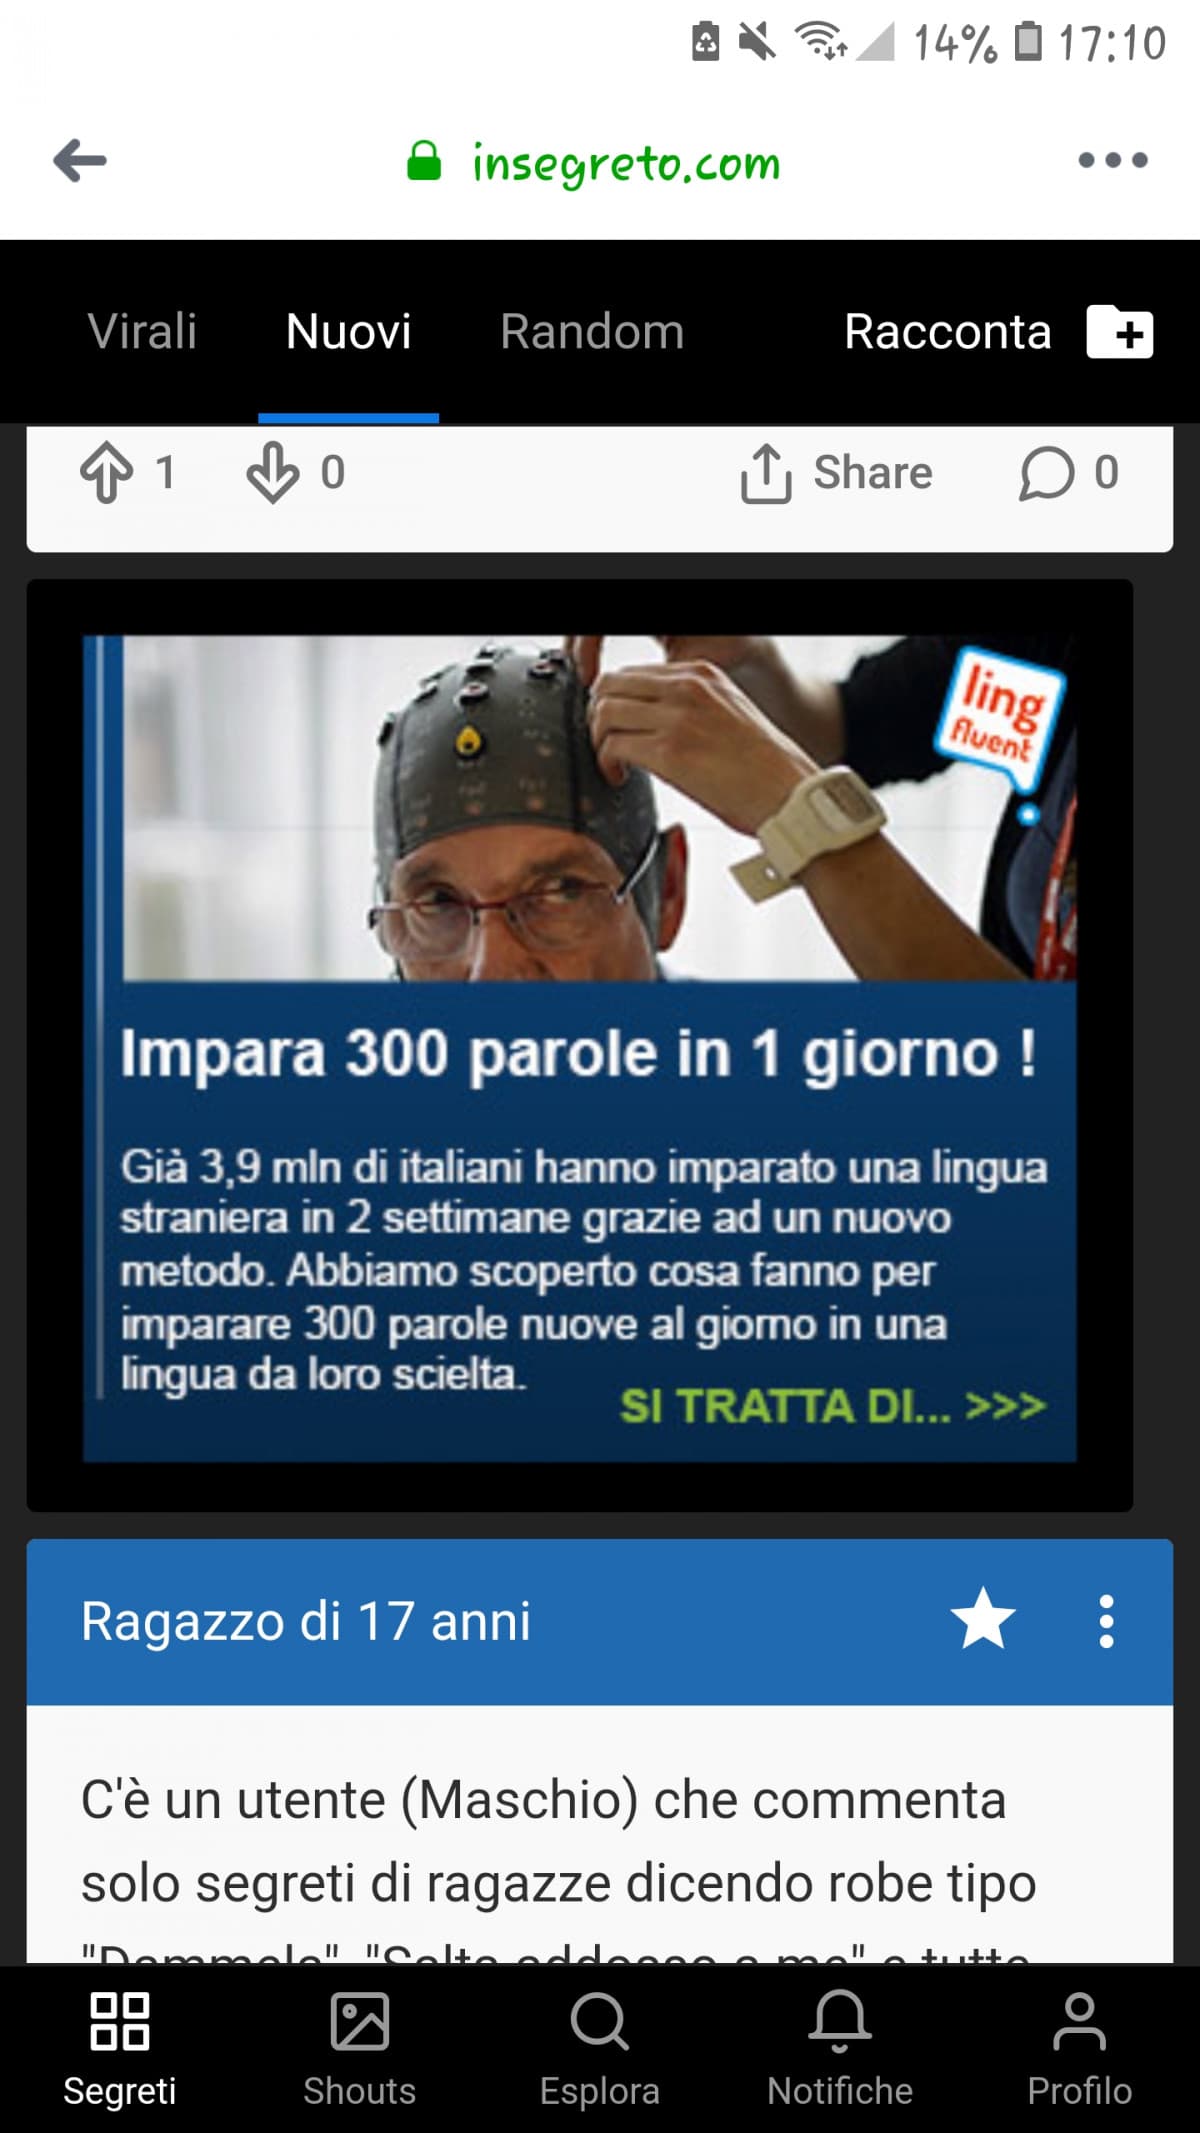 Certo, questa pubblicità si fa sempre più credibile... scielta è italiano?